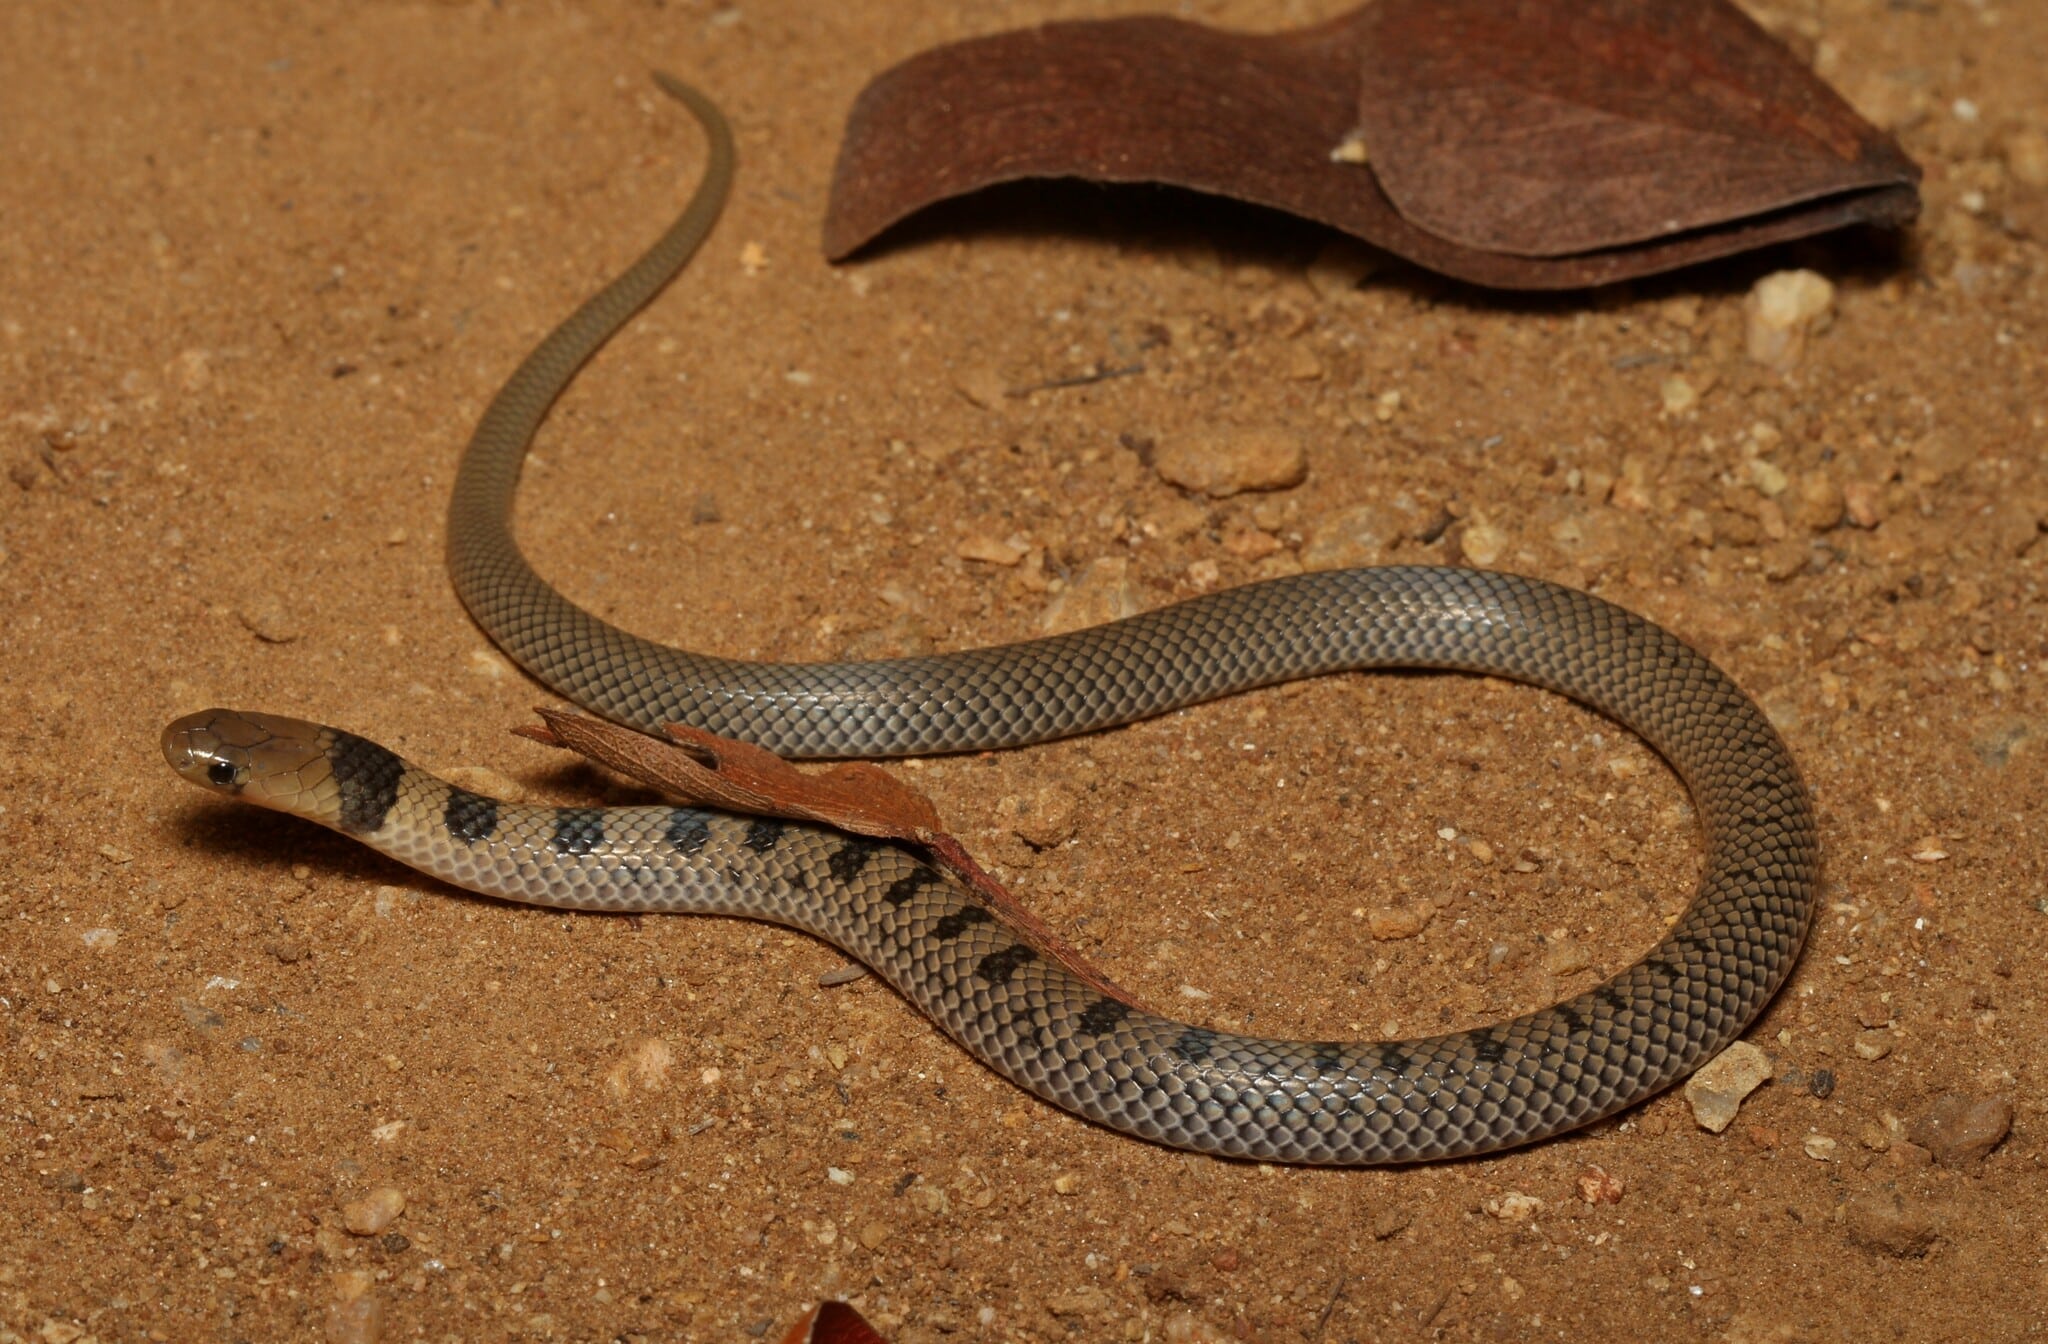 Uvula-Eyed Snake